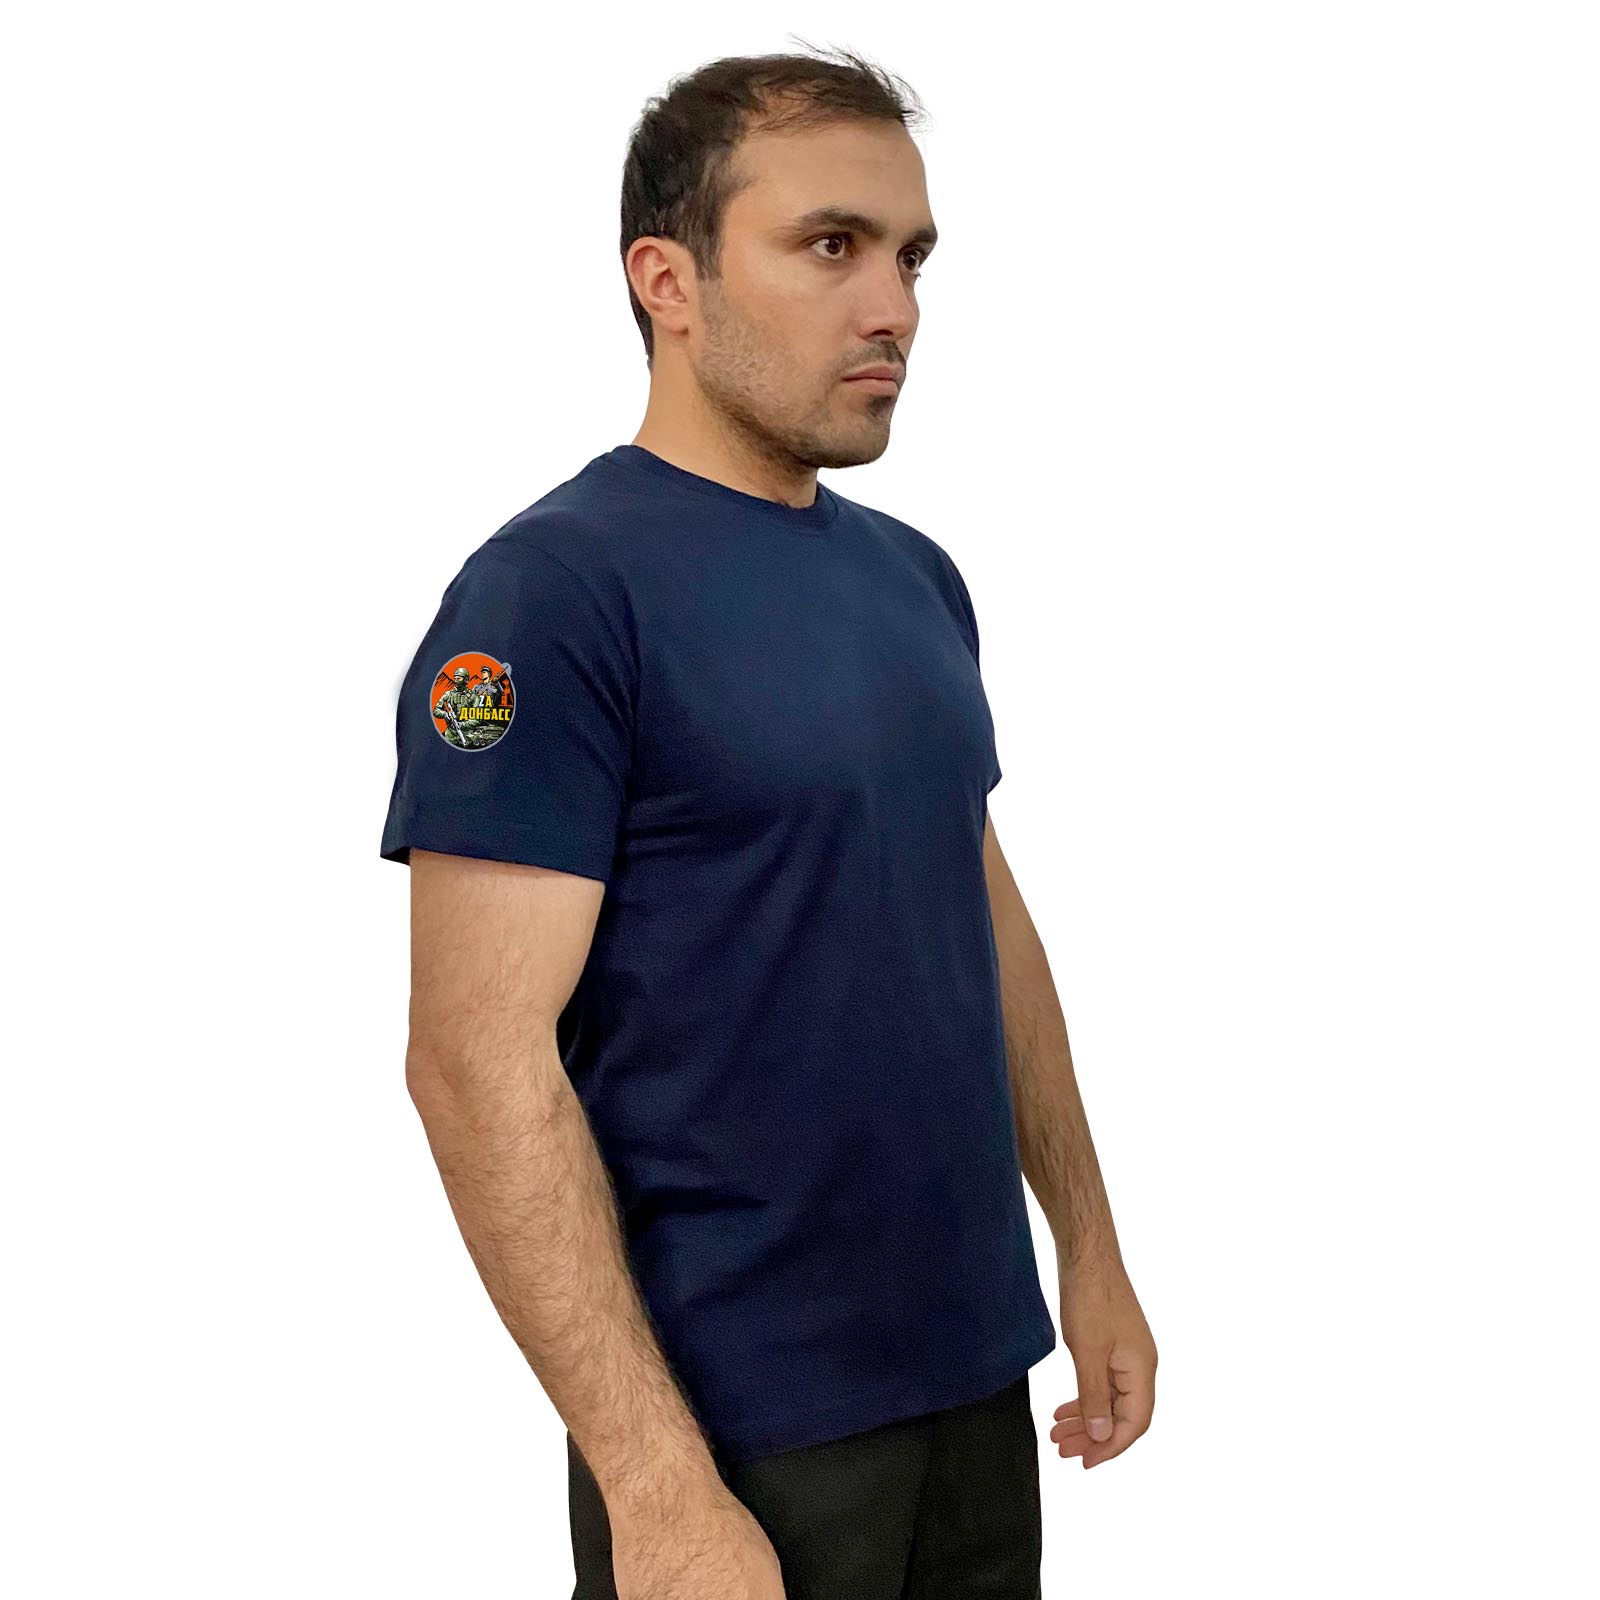 Тёмно-синяя футболка с термопринтом "Zа Донбасс" на рукаве